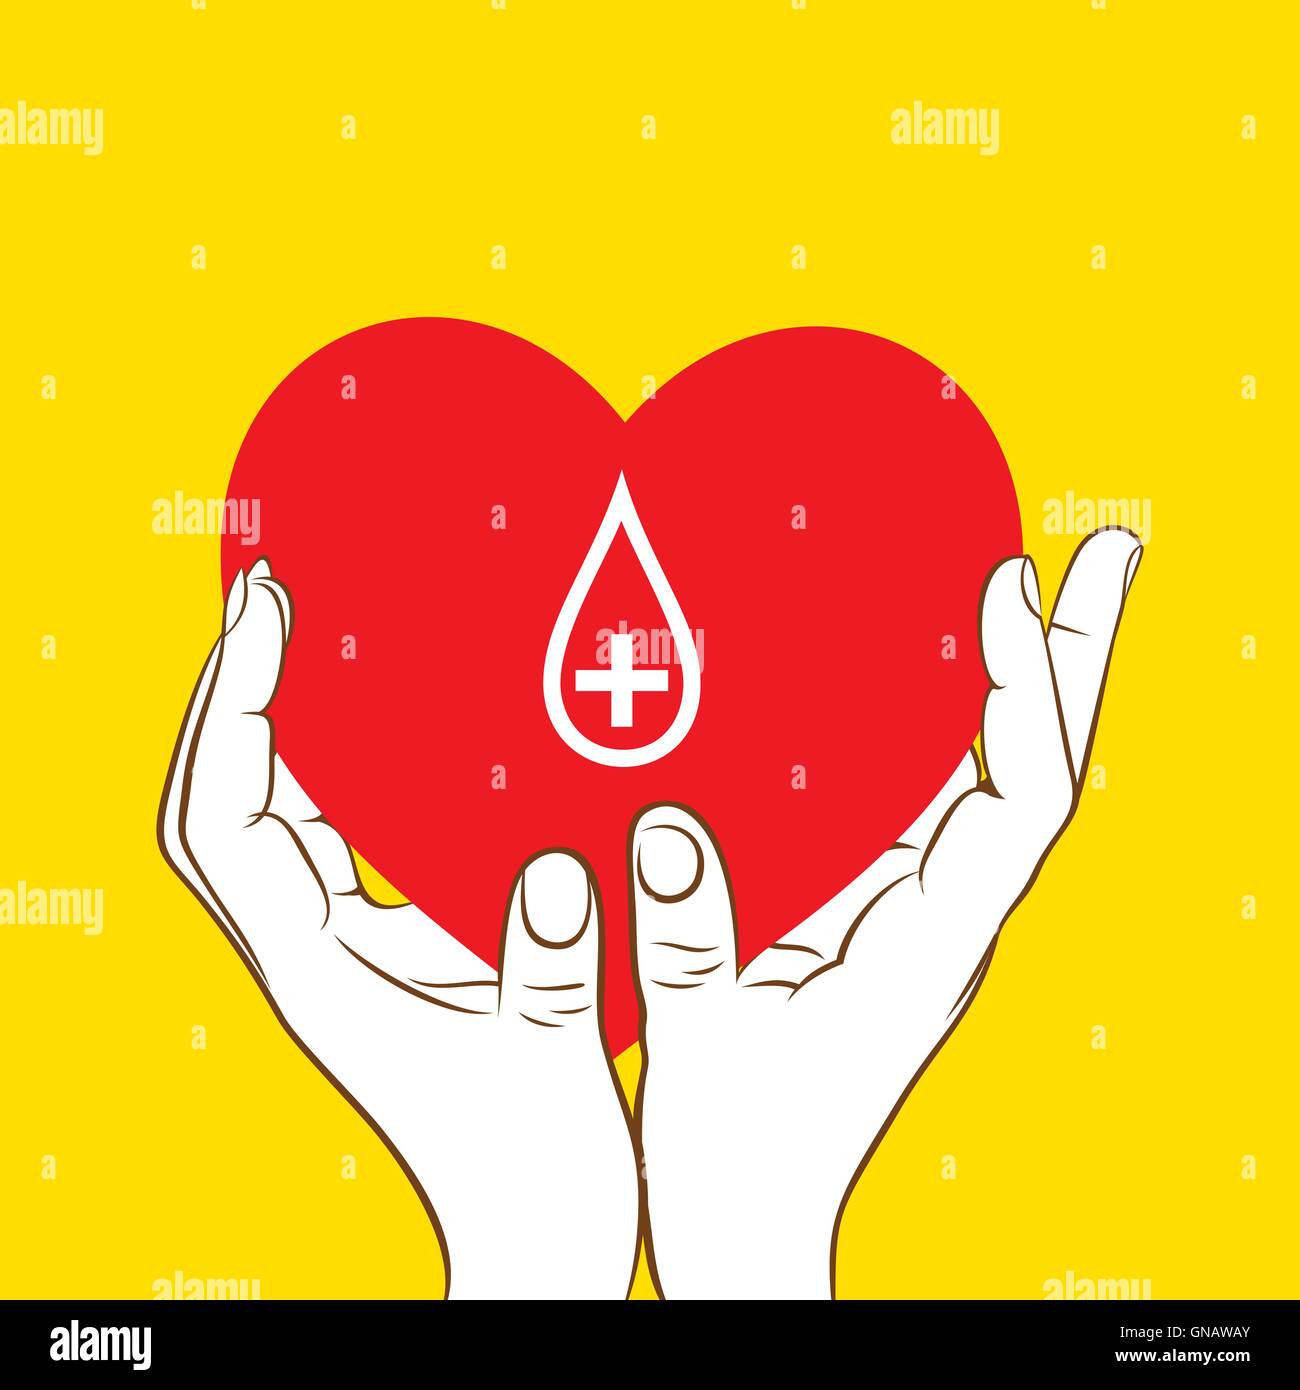 creative blood donation concept design vector Stock Vector